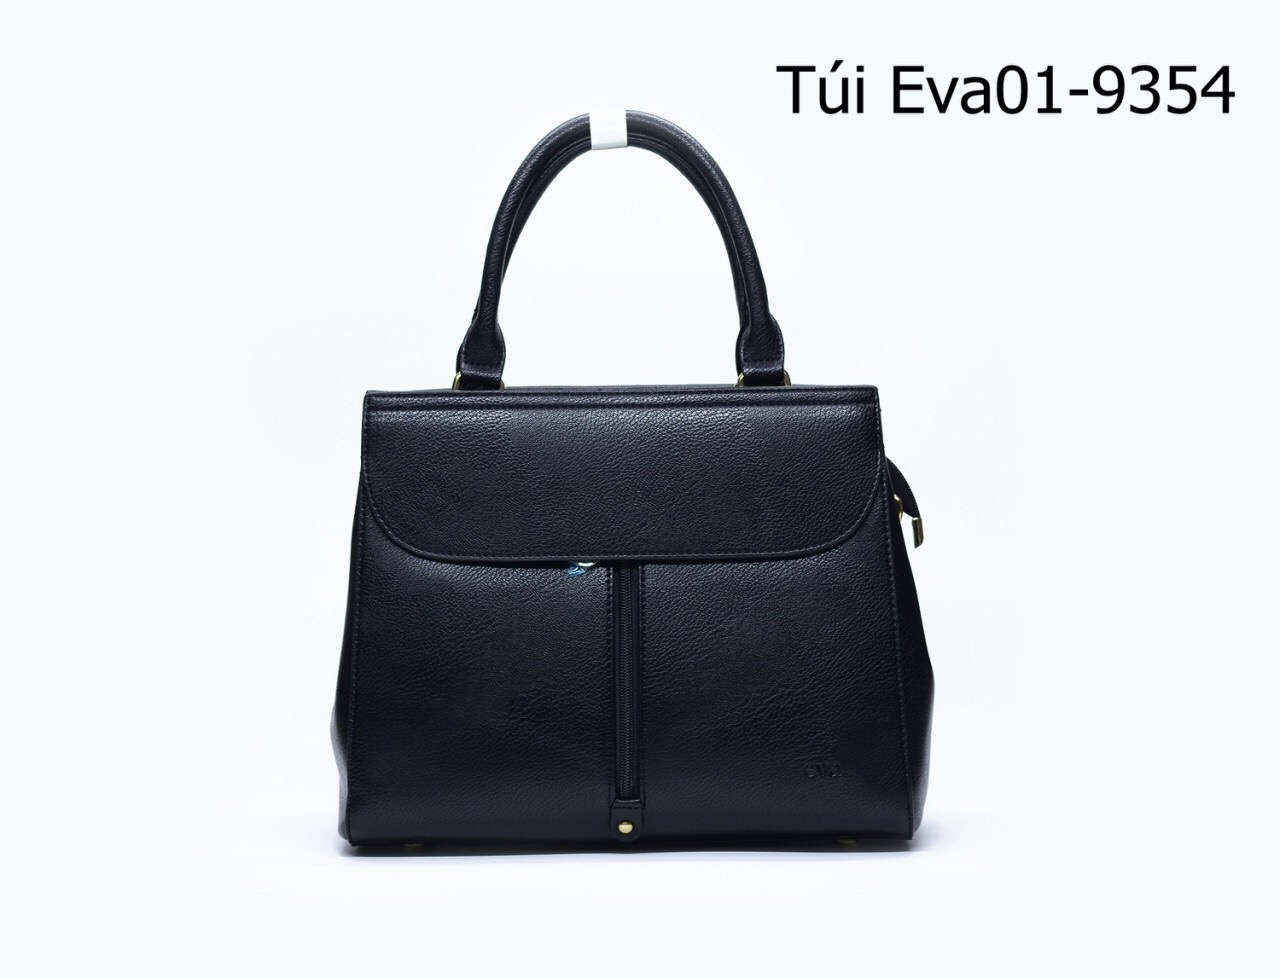 Túi xách nữ Eva01-9354 thiết kế dáng to phối khóa đứng độc đáo, sành điệu, màu đen quý phái